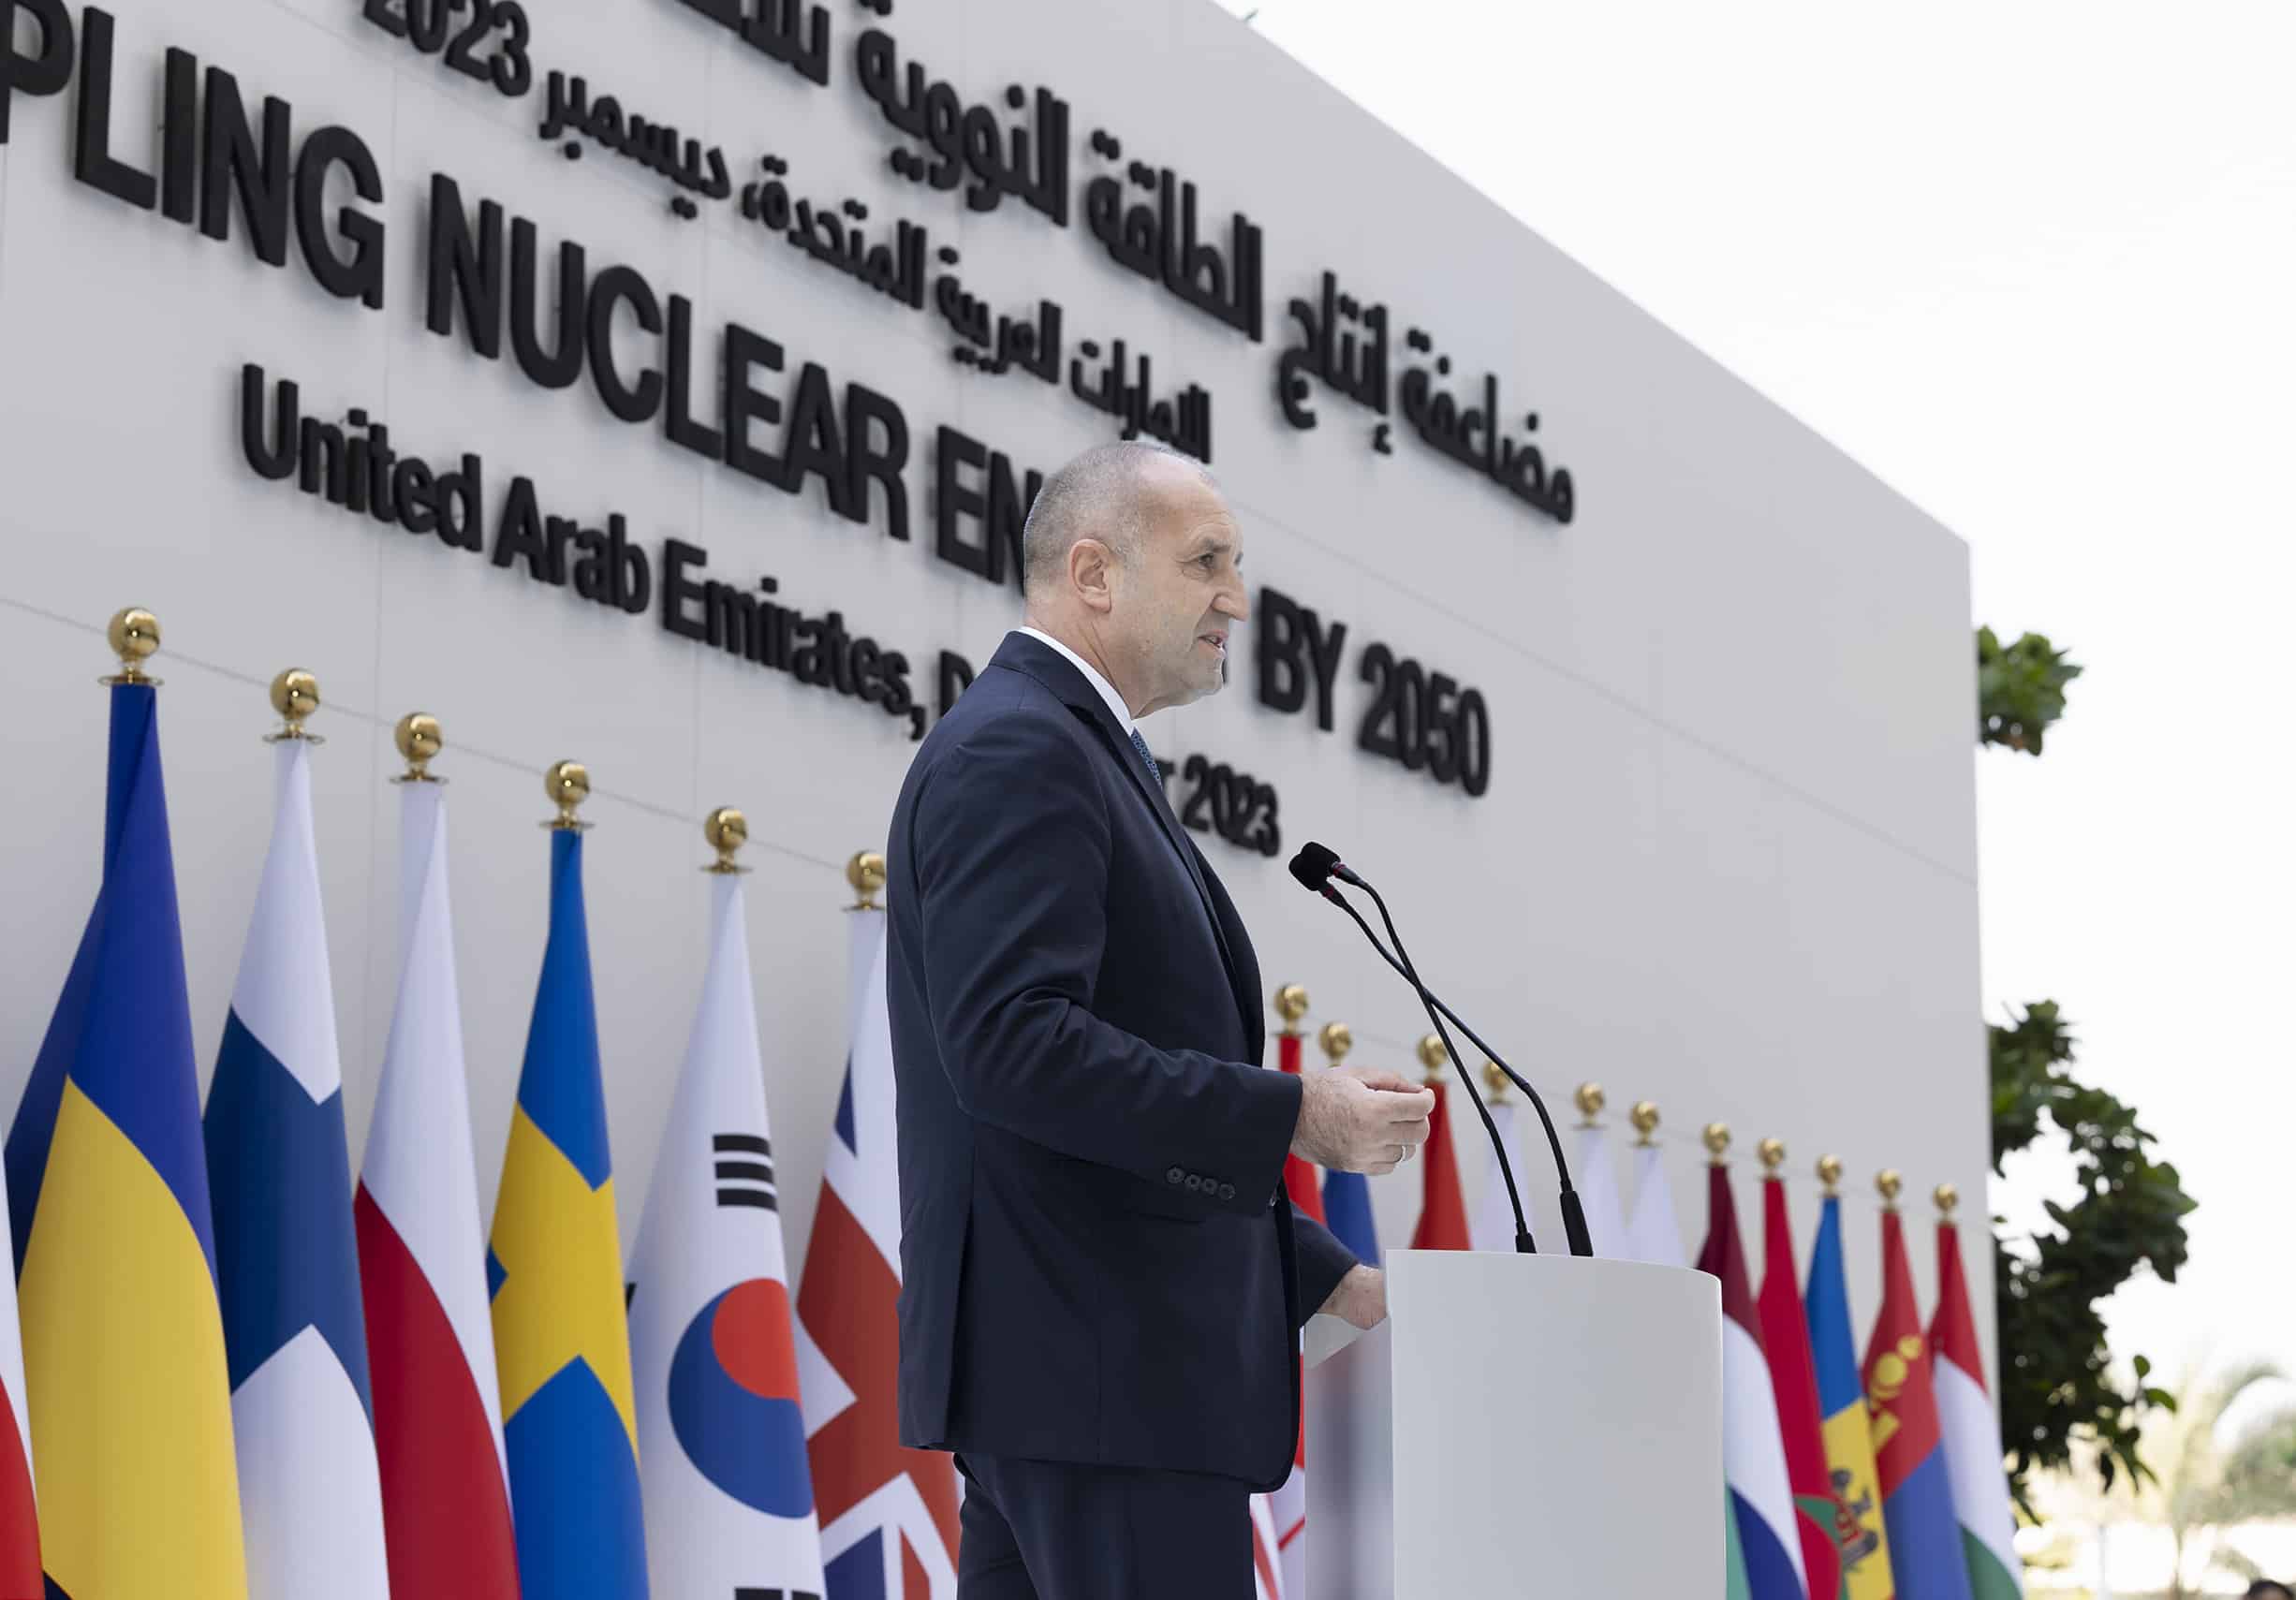 Ядрената енергия дава независимост автономност и сигурност на всяка страна